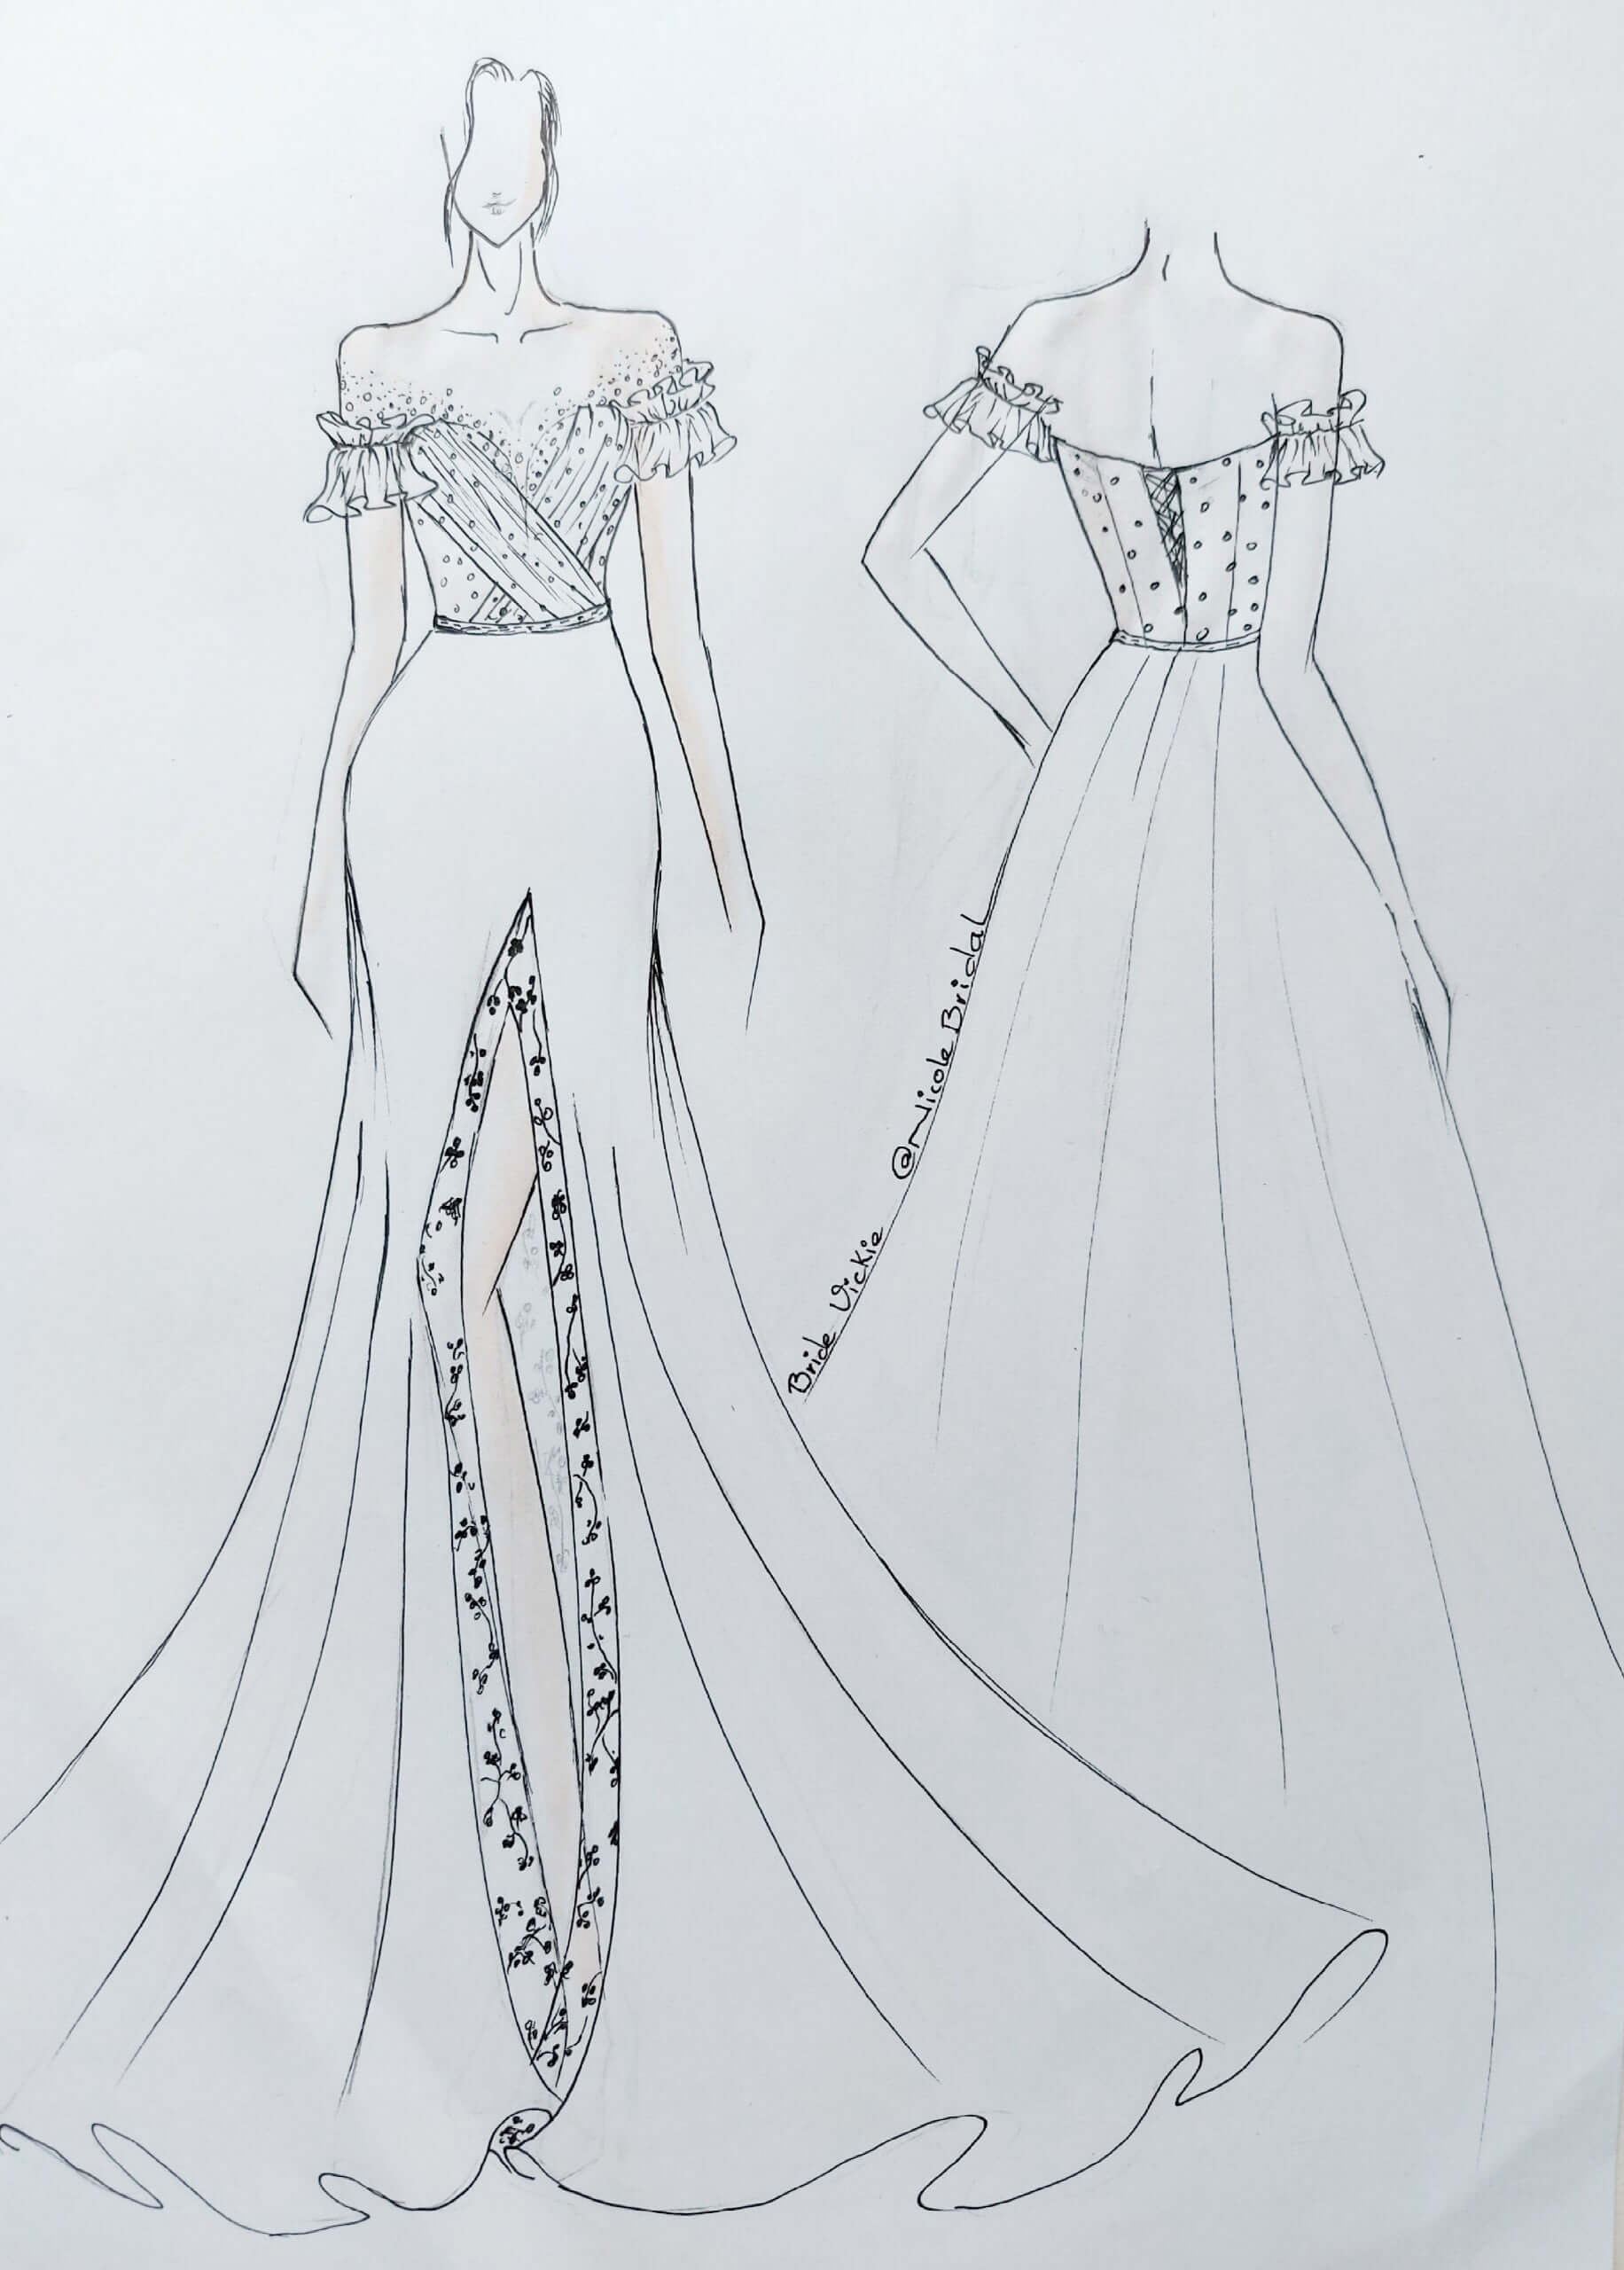 Cách vẽ váy cưới đẹp rất đơn giản  Hướng dẫn vẽ váy cưới bằng bút chì   How to draw wedding dress  YouTube